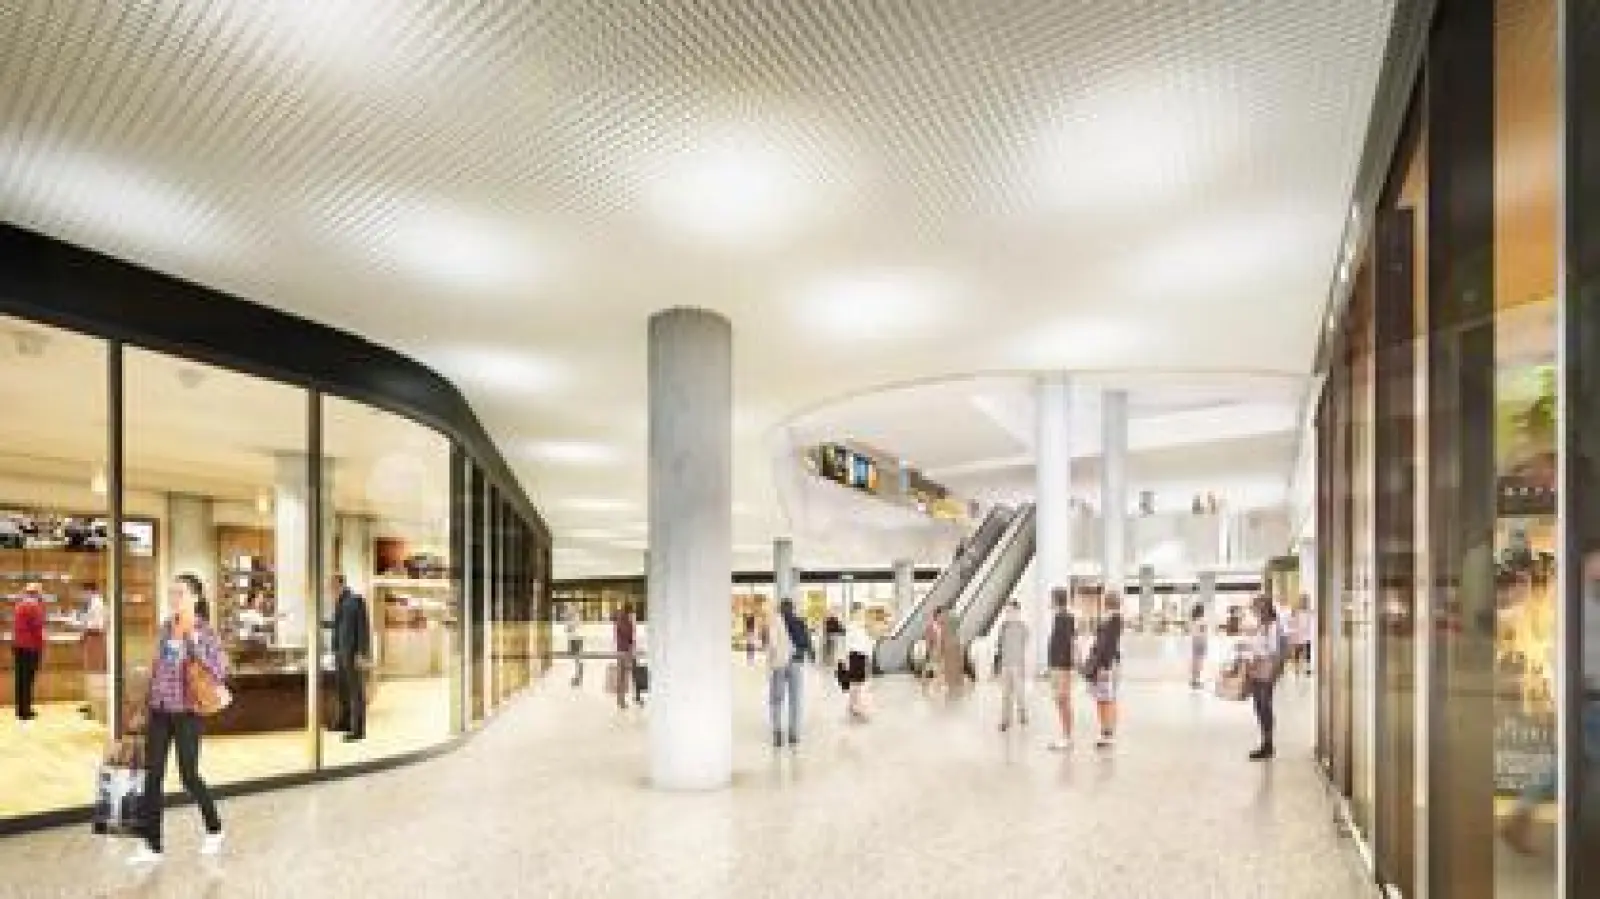 Moderner und attraktiver als das ehemalige Fuggerstadtcenter soll die neue Helio-Passage am Hauptbahnhof aussehen. (Foto: ActivumSG)